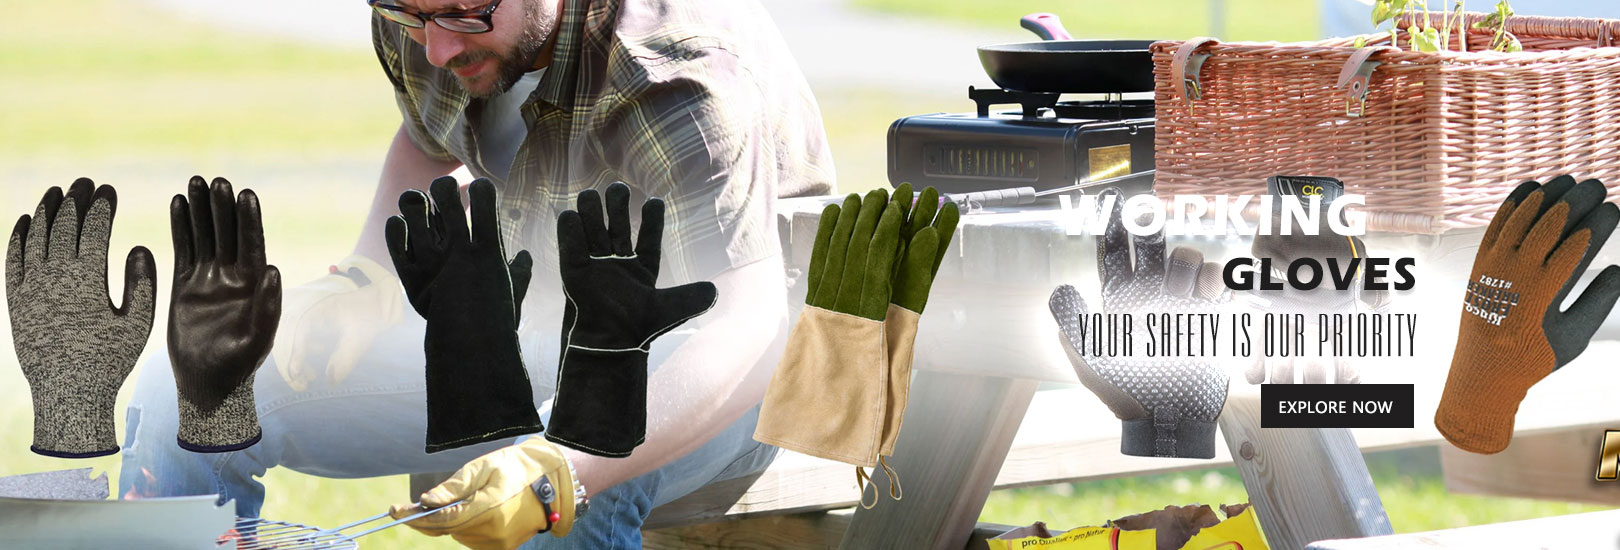 Working Gloves - Welding Gloves